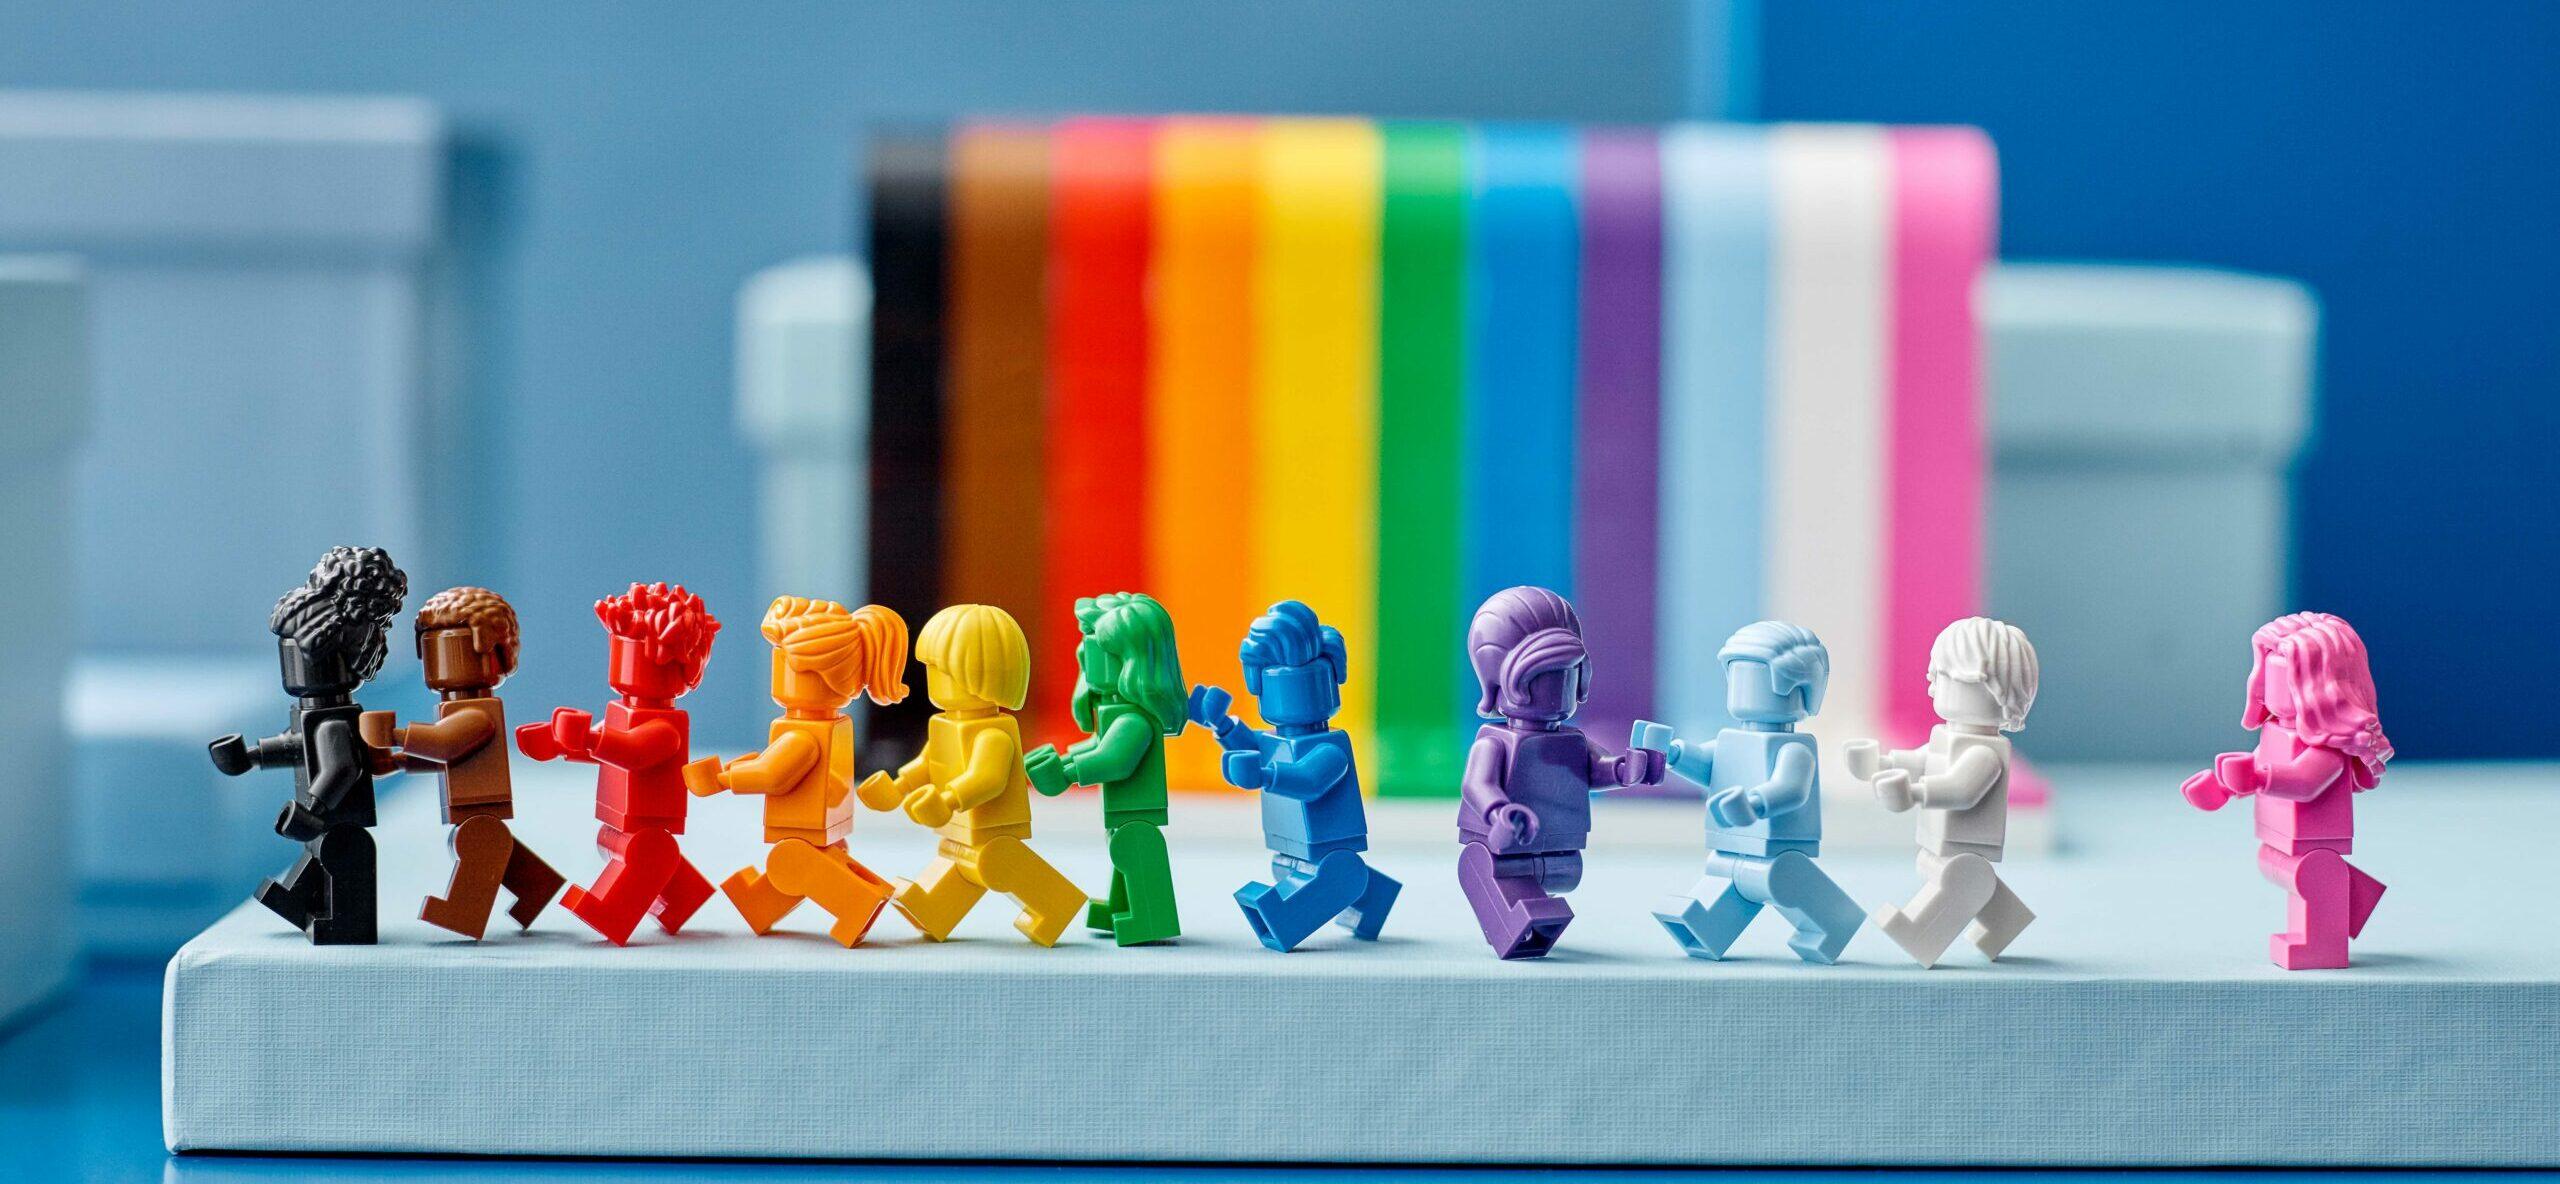 LEGO unveils first LGBTQ set